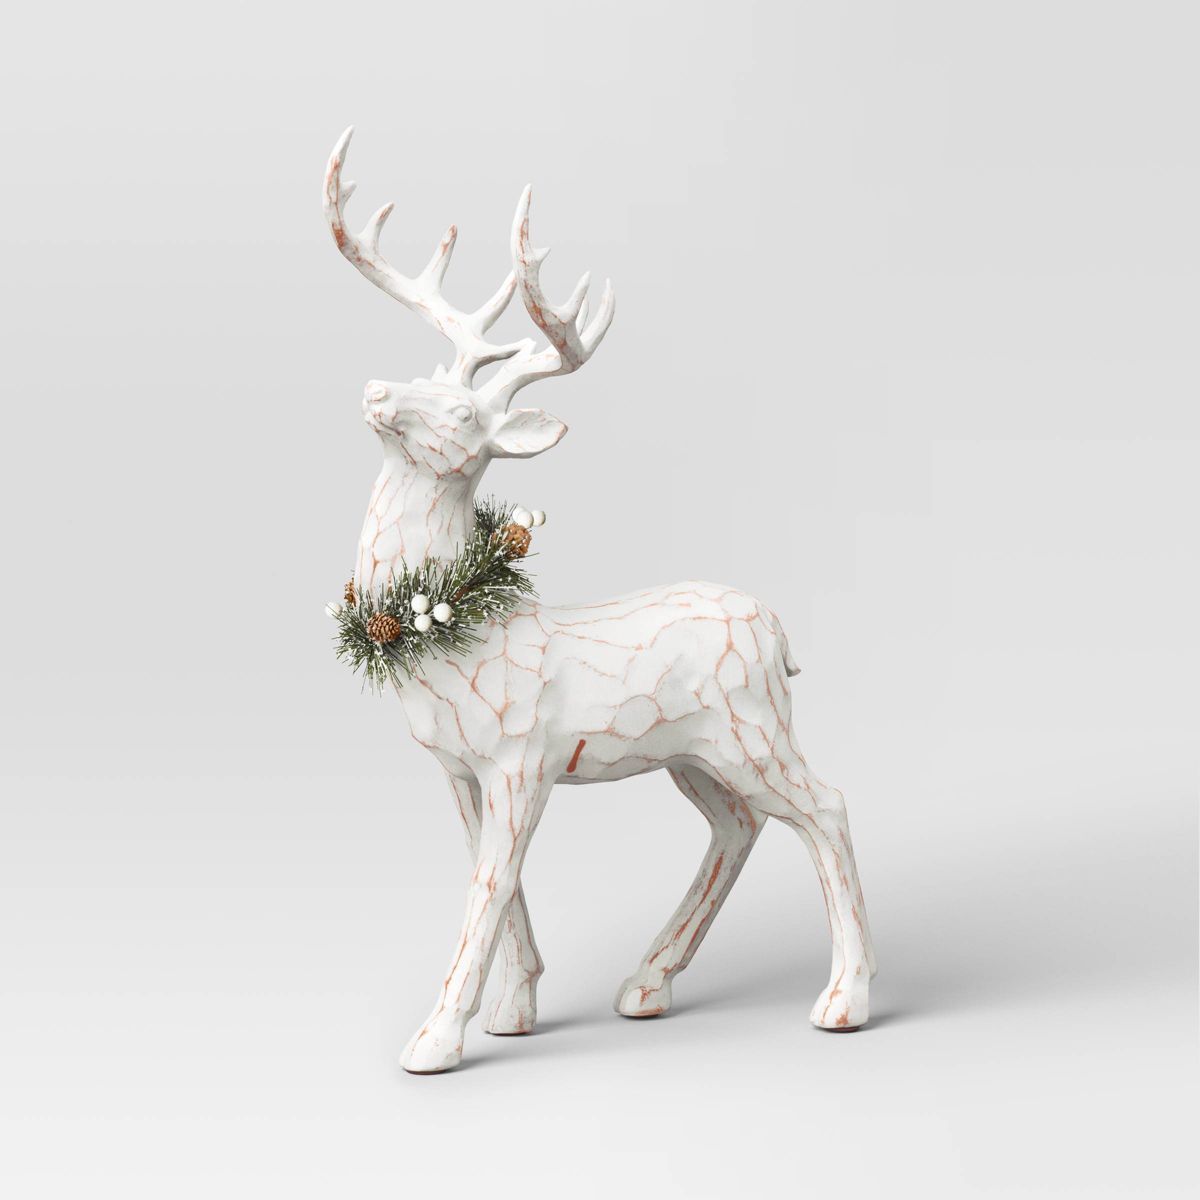 18" Standing Reindeer Animal Christmas Sculpture - Wondershop™ White | Target